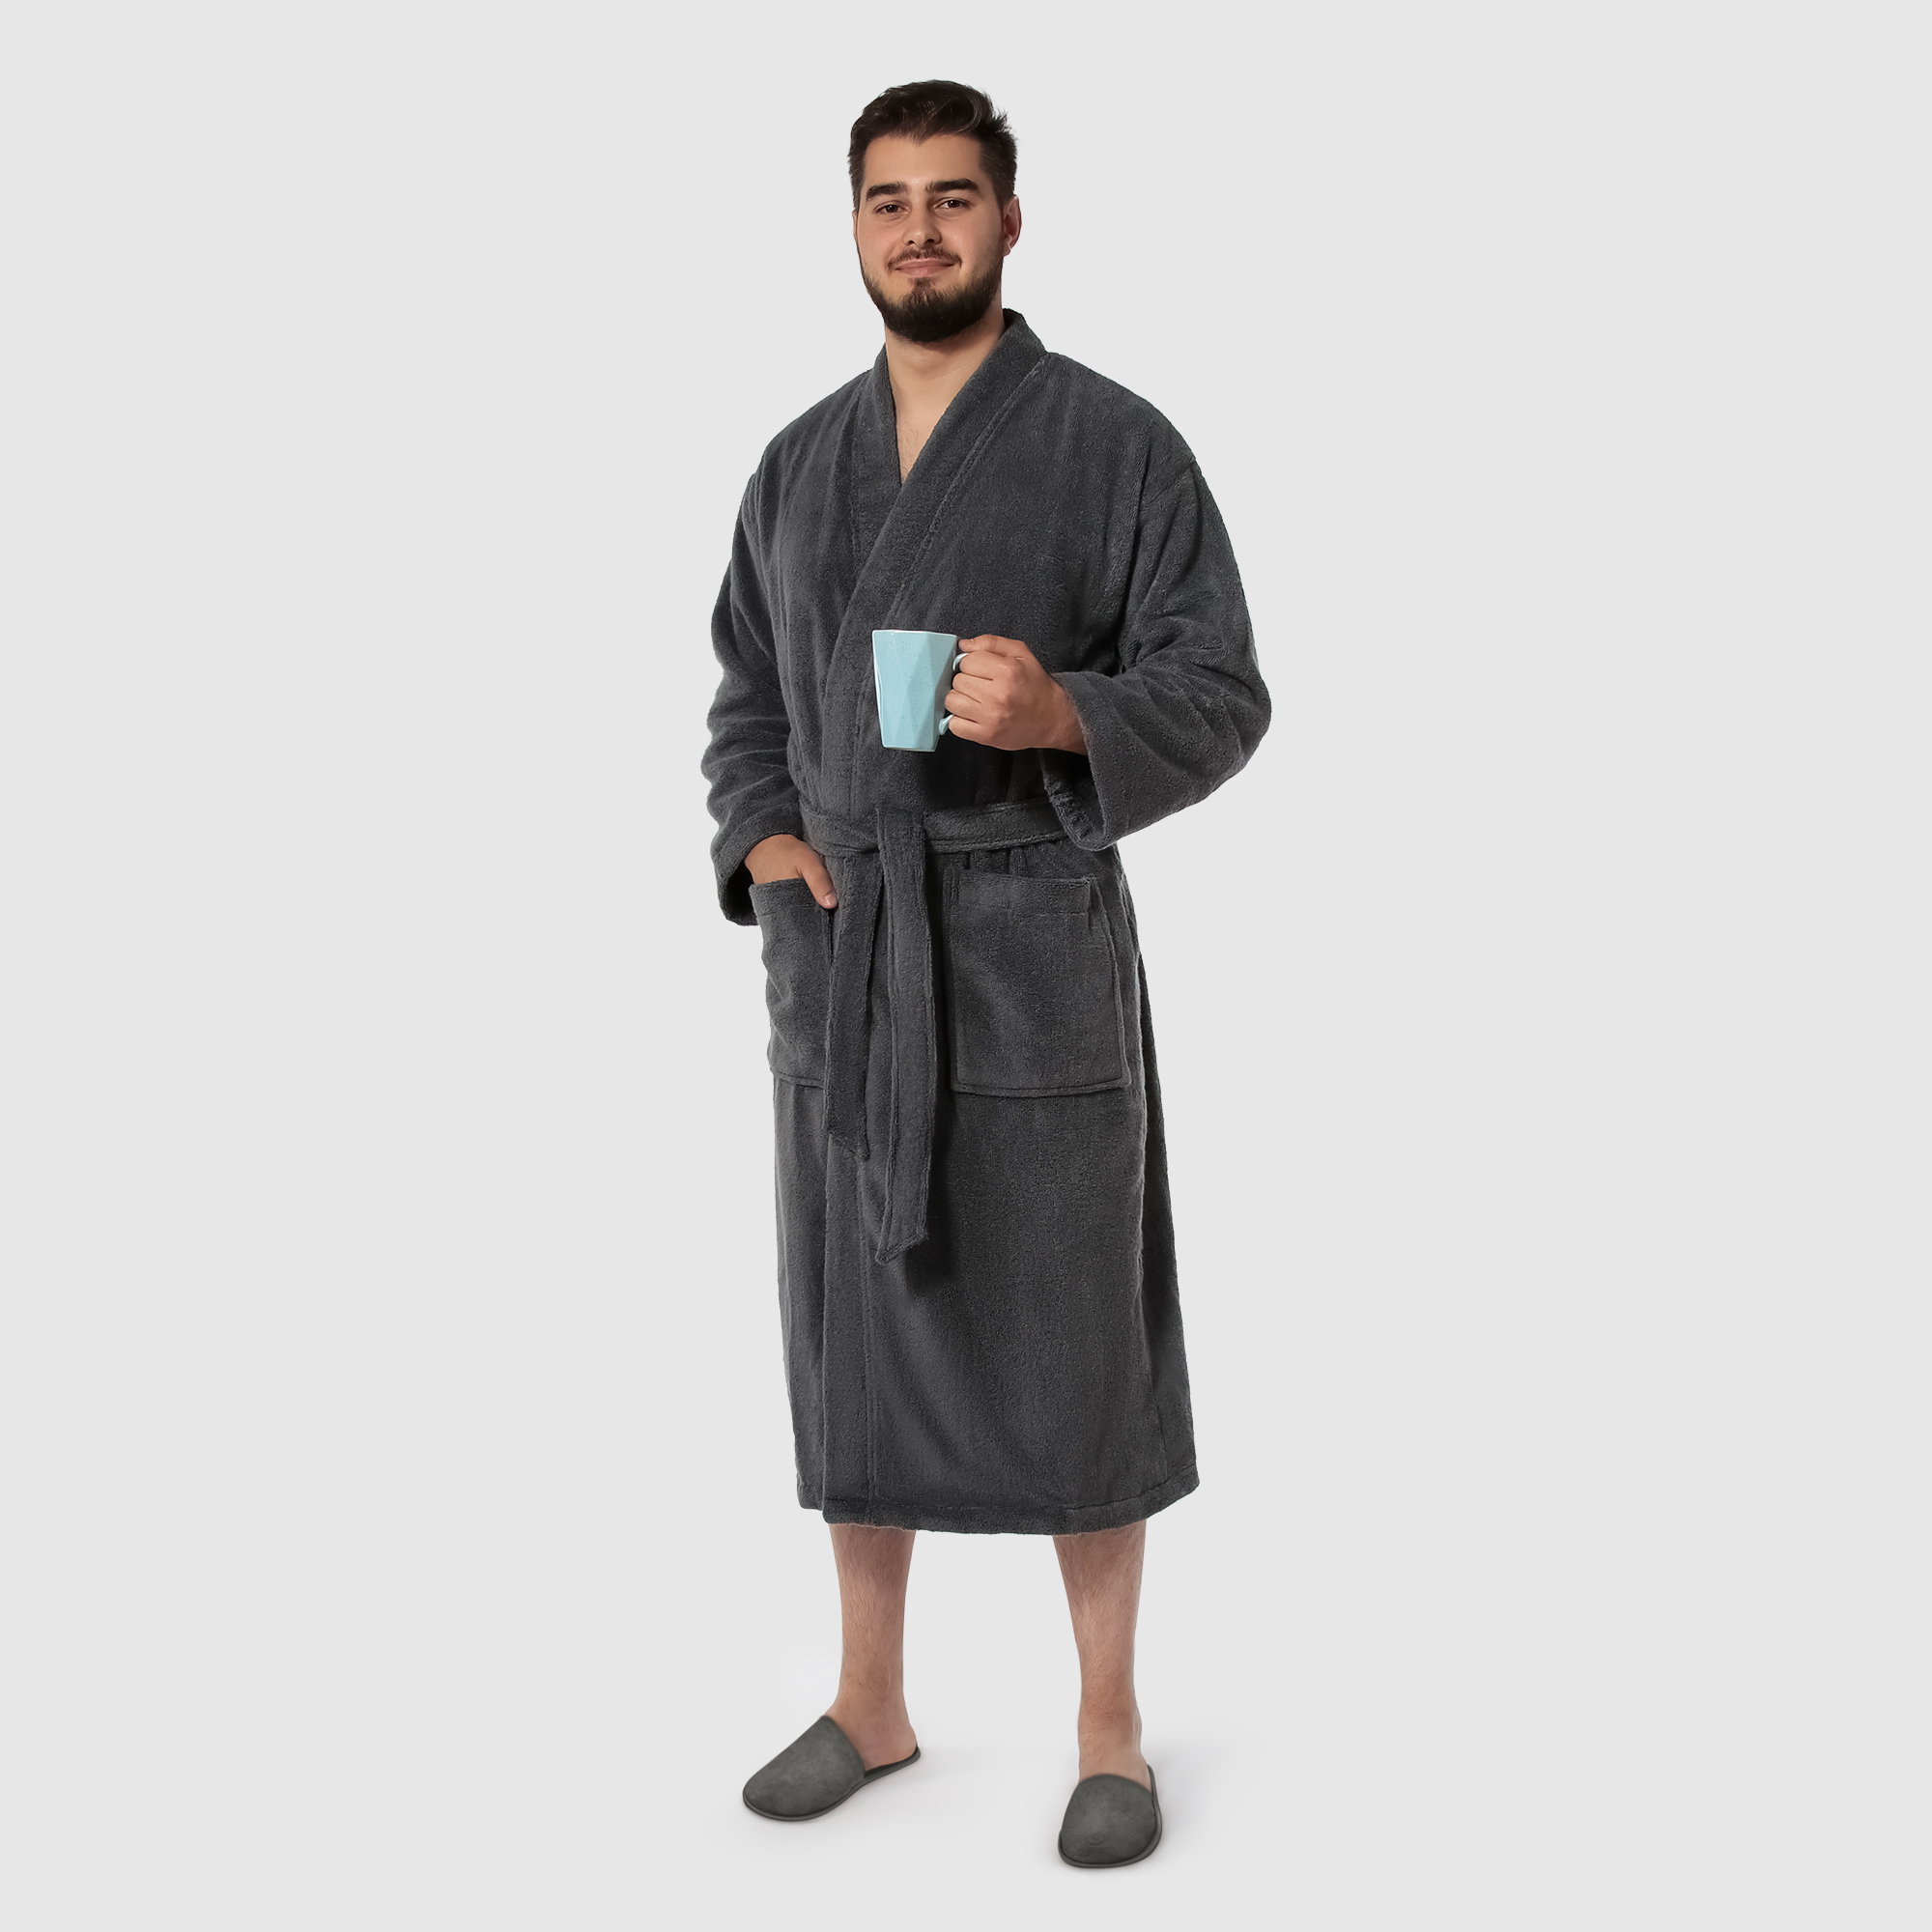 Мужской халат Maisonette Parla тёмно-серый L халат мужской asil sauna brown xl вафельный с капюшоном